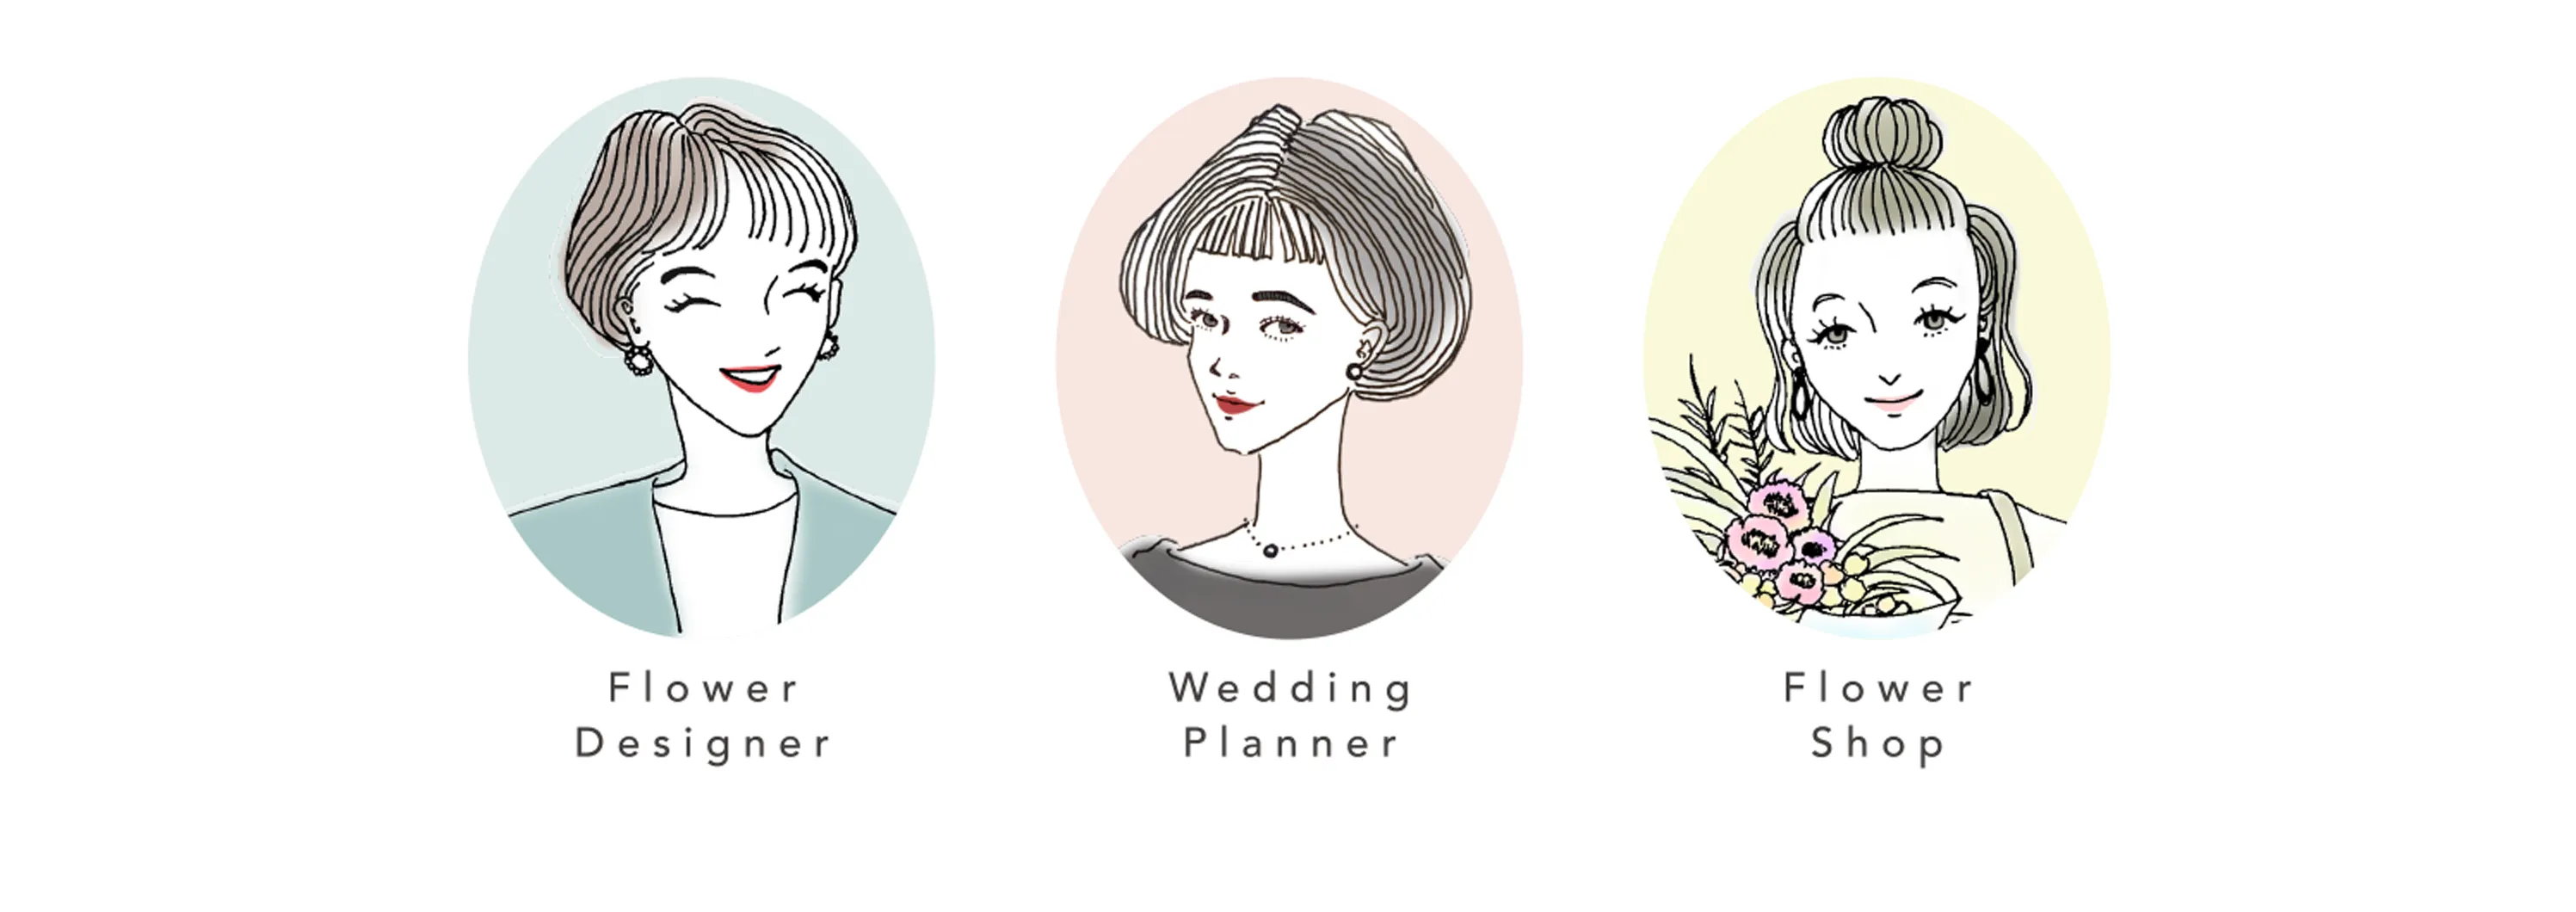 Flower Designer / Wedding Planner / Flower Shop